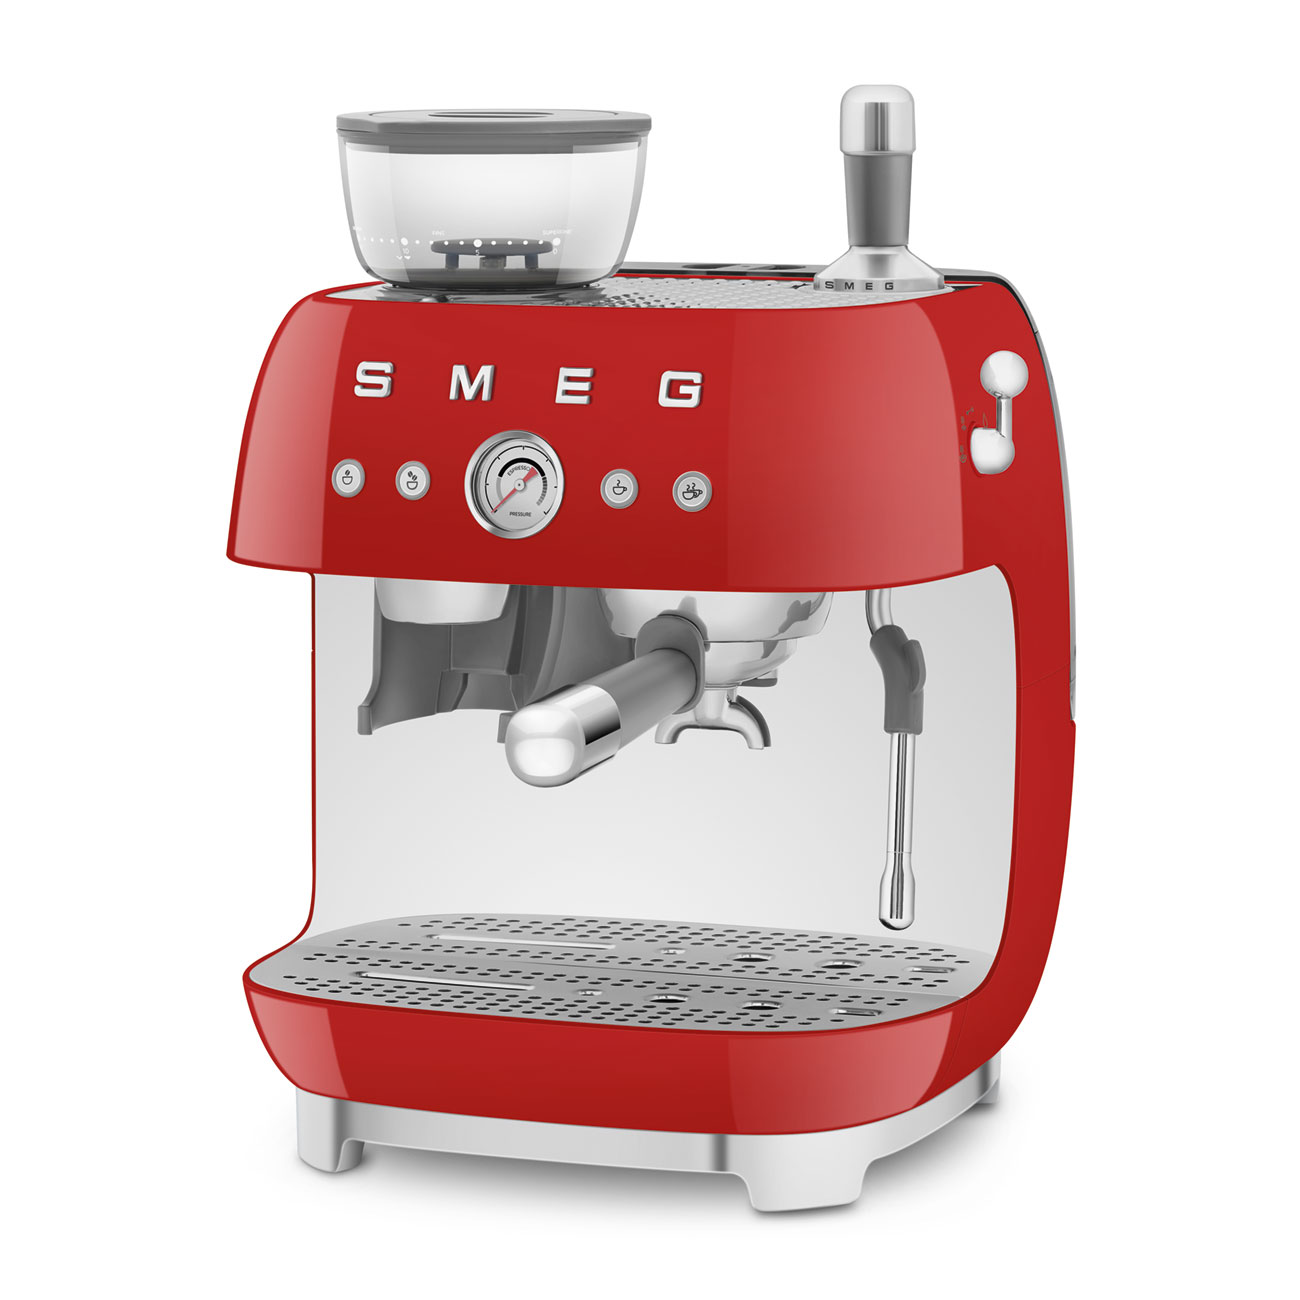 Smeg Rouge Machine à café expresso manuelle avec broyeur à grain intégré_4